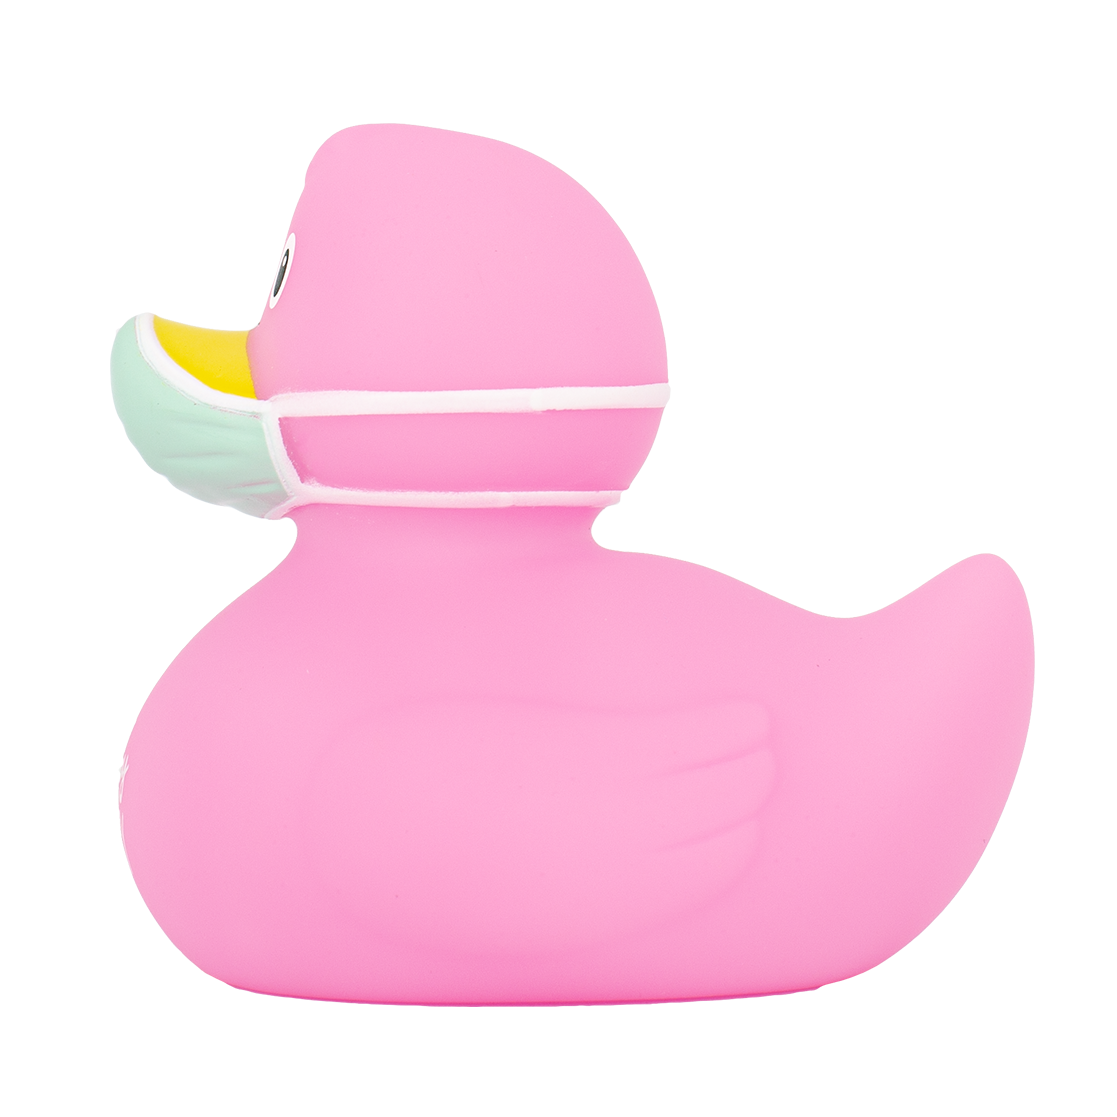 Rose Corona Duck "Var frisk och glad"